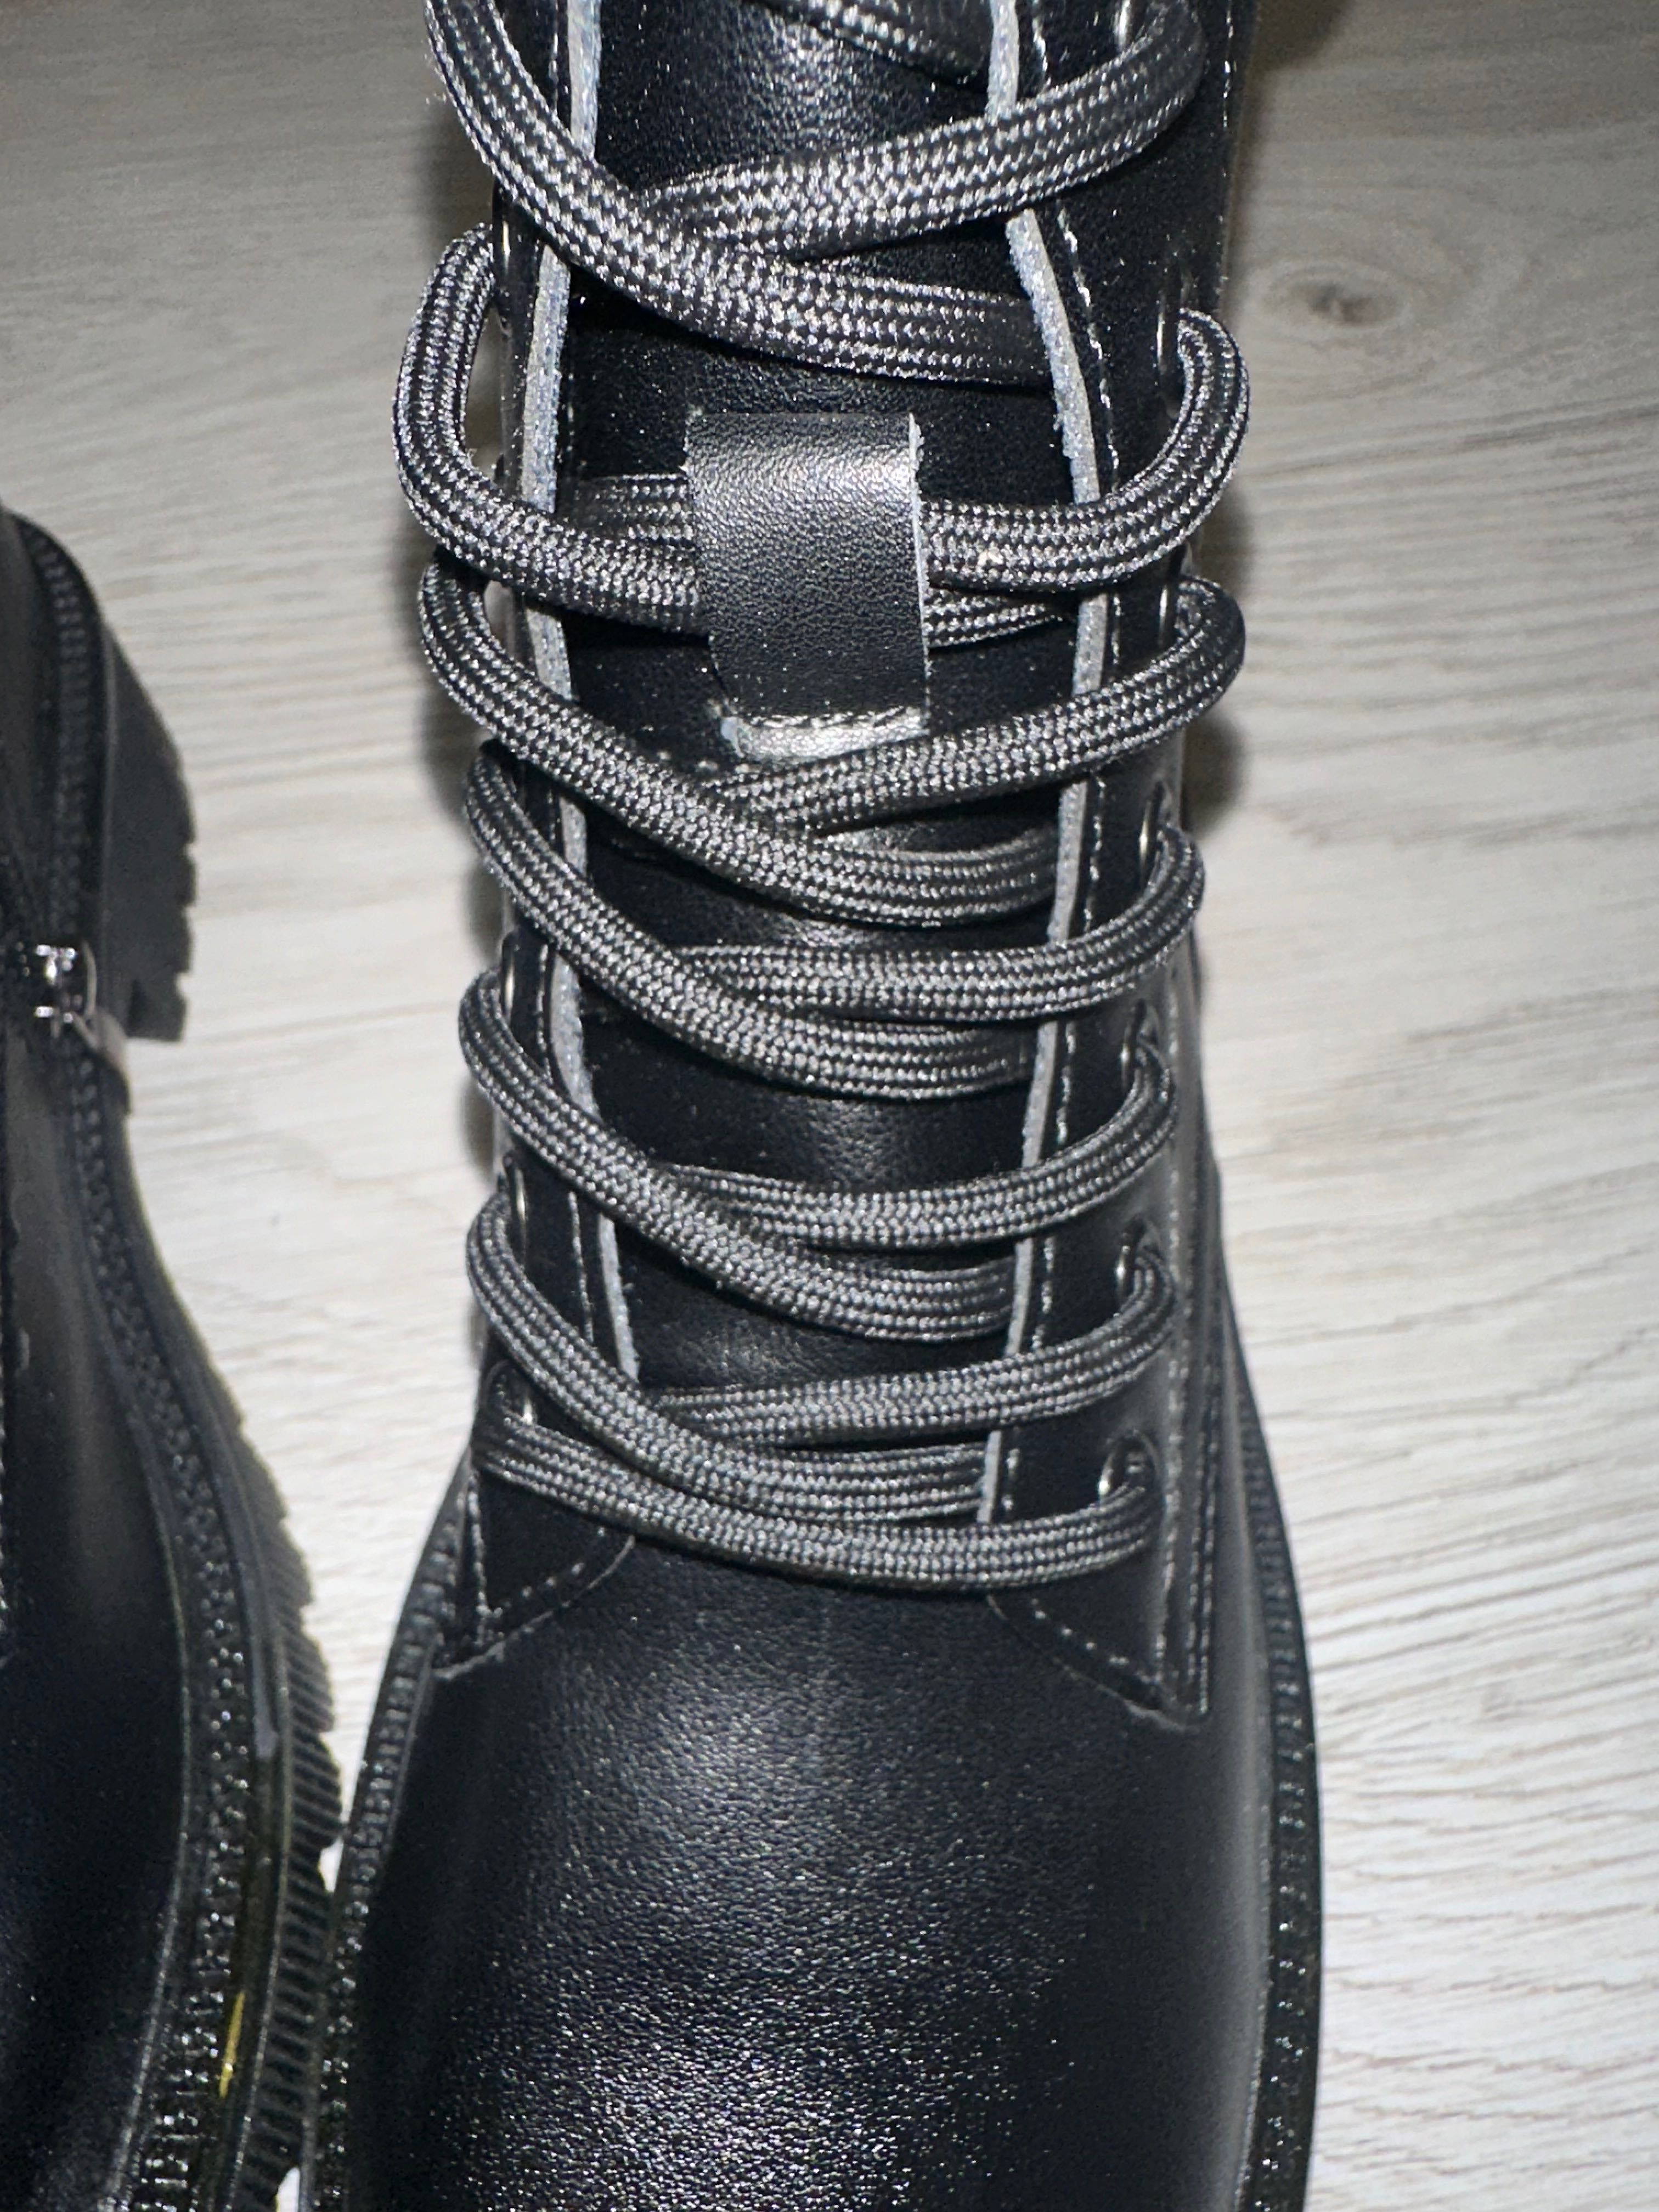 Buty czarne, nowe